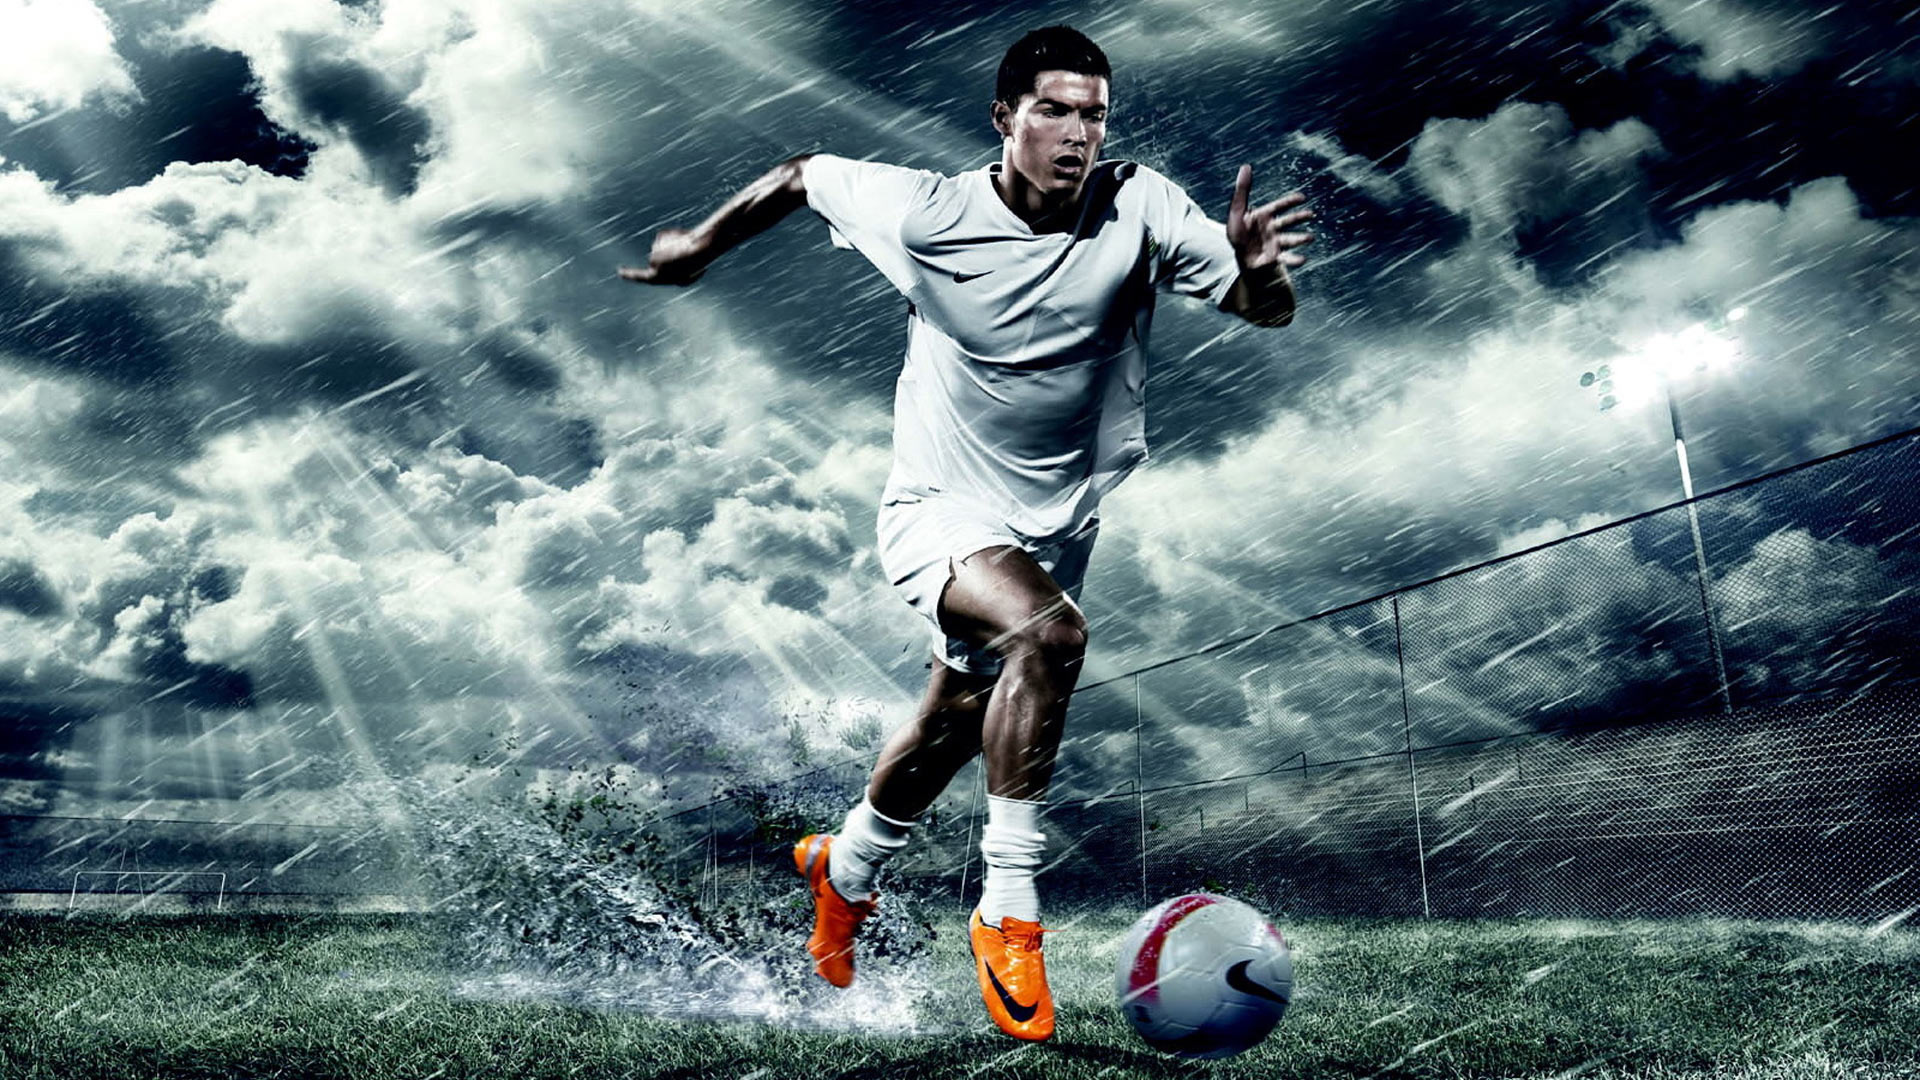 Cristiano Ronaldo Nike running wallpaper